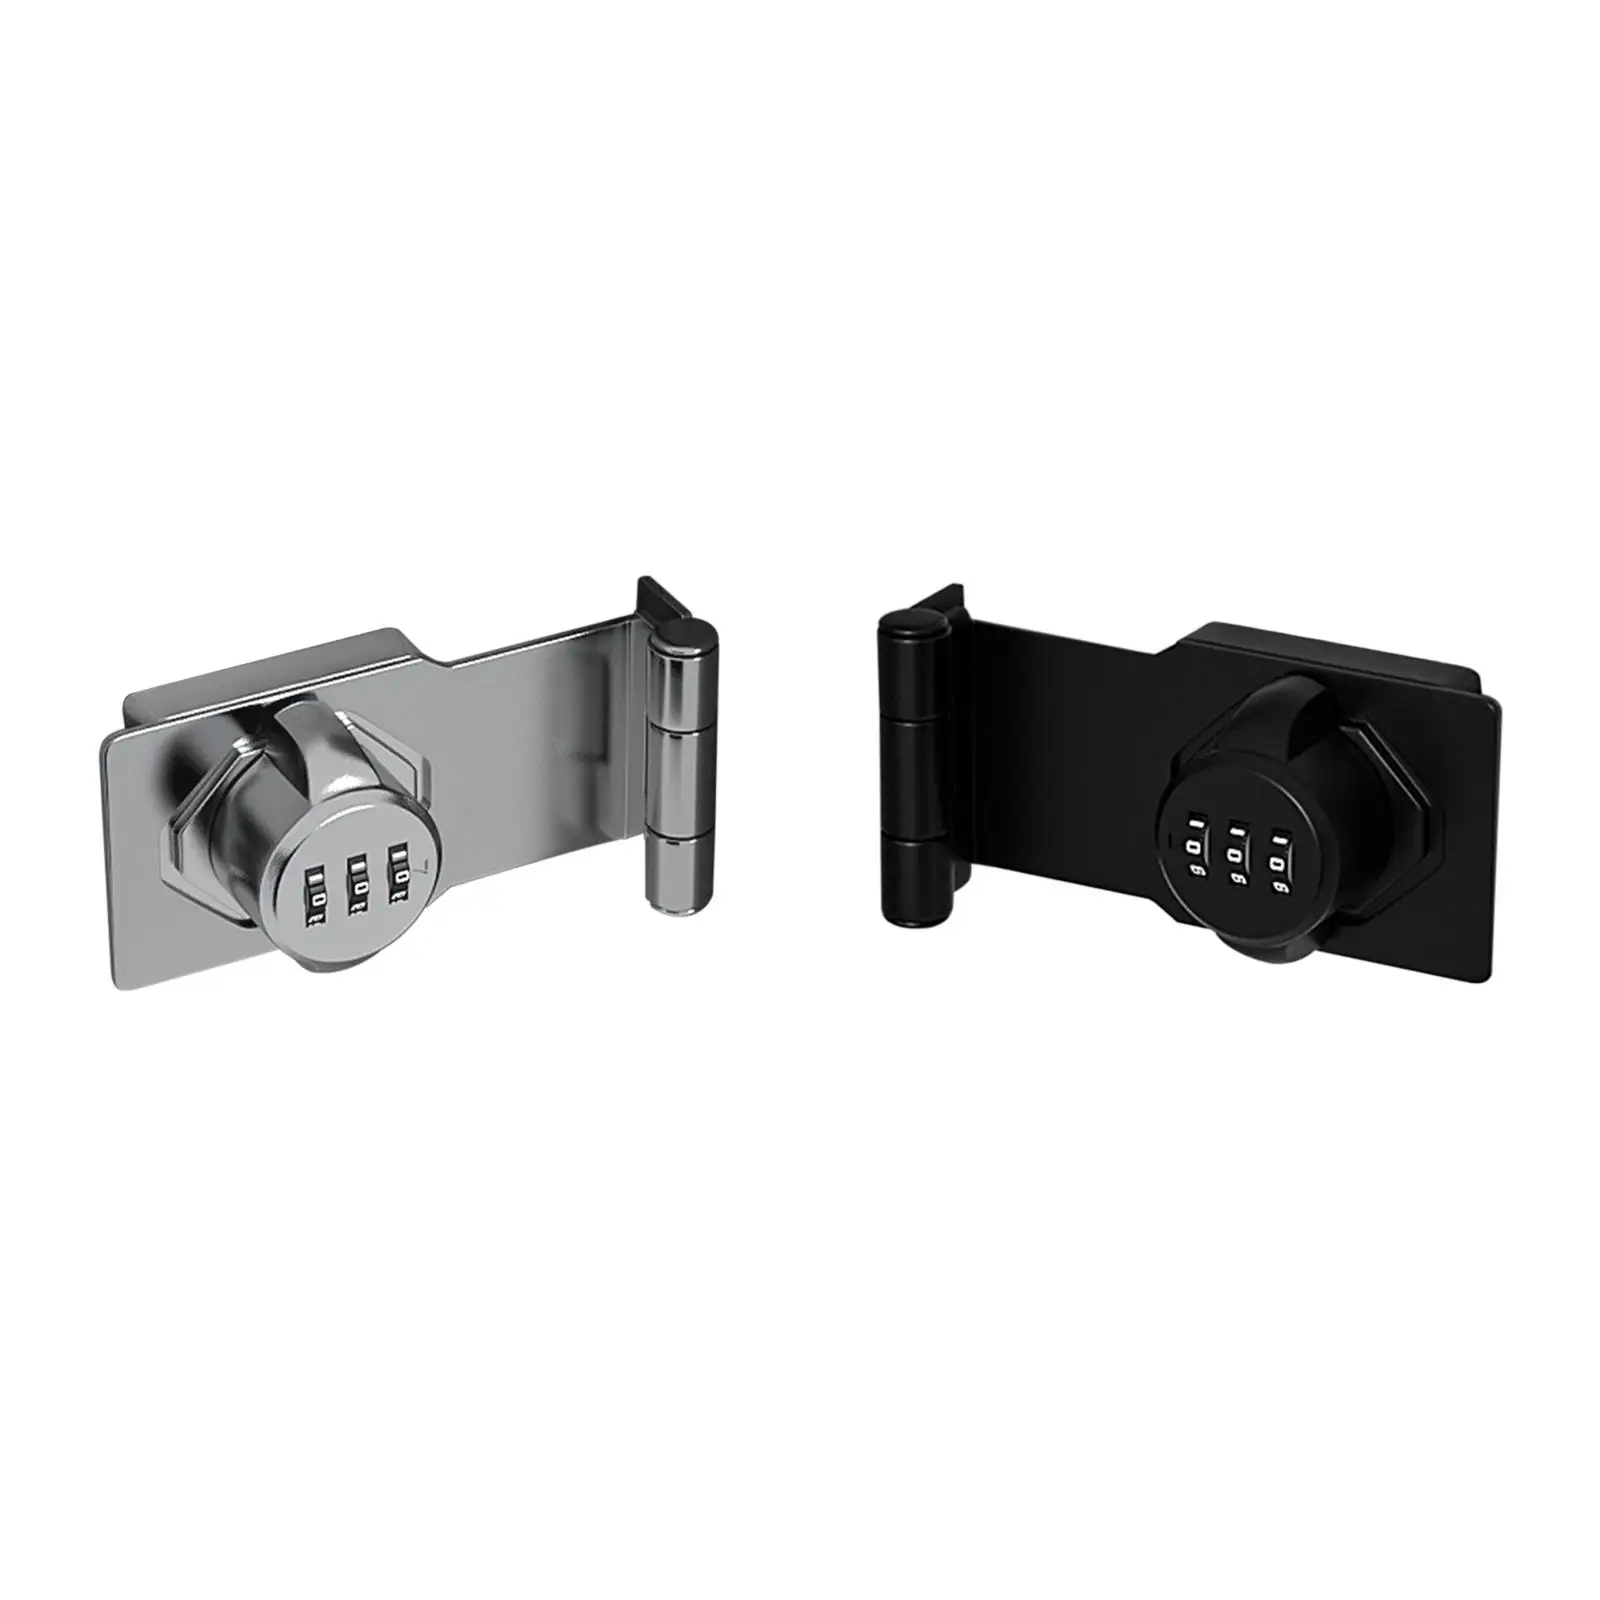 3 Digit Combination Lock Mechanical Combination Cam Lock Convenient Convenient